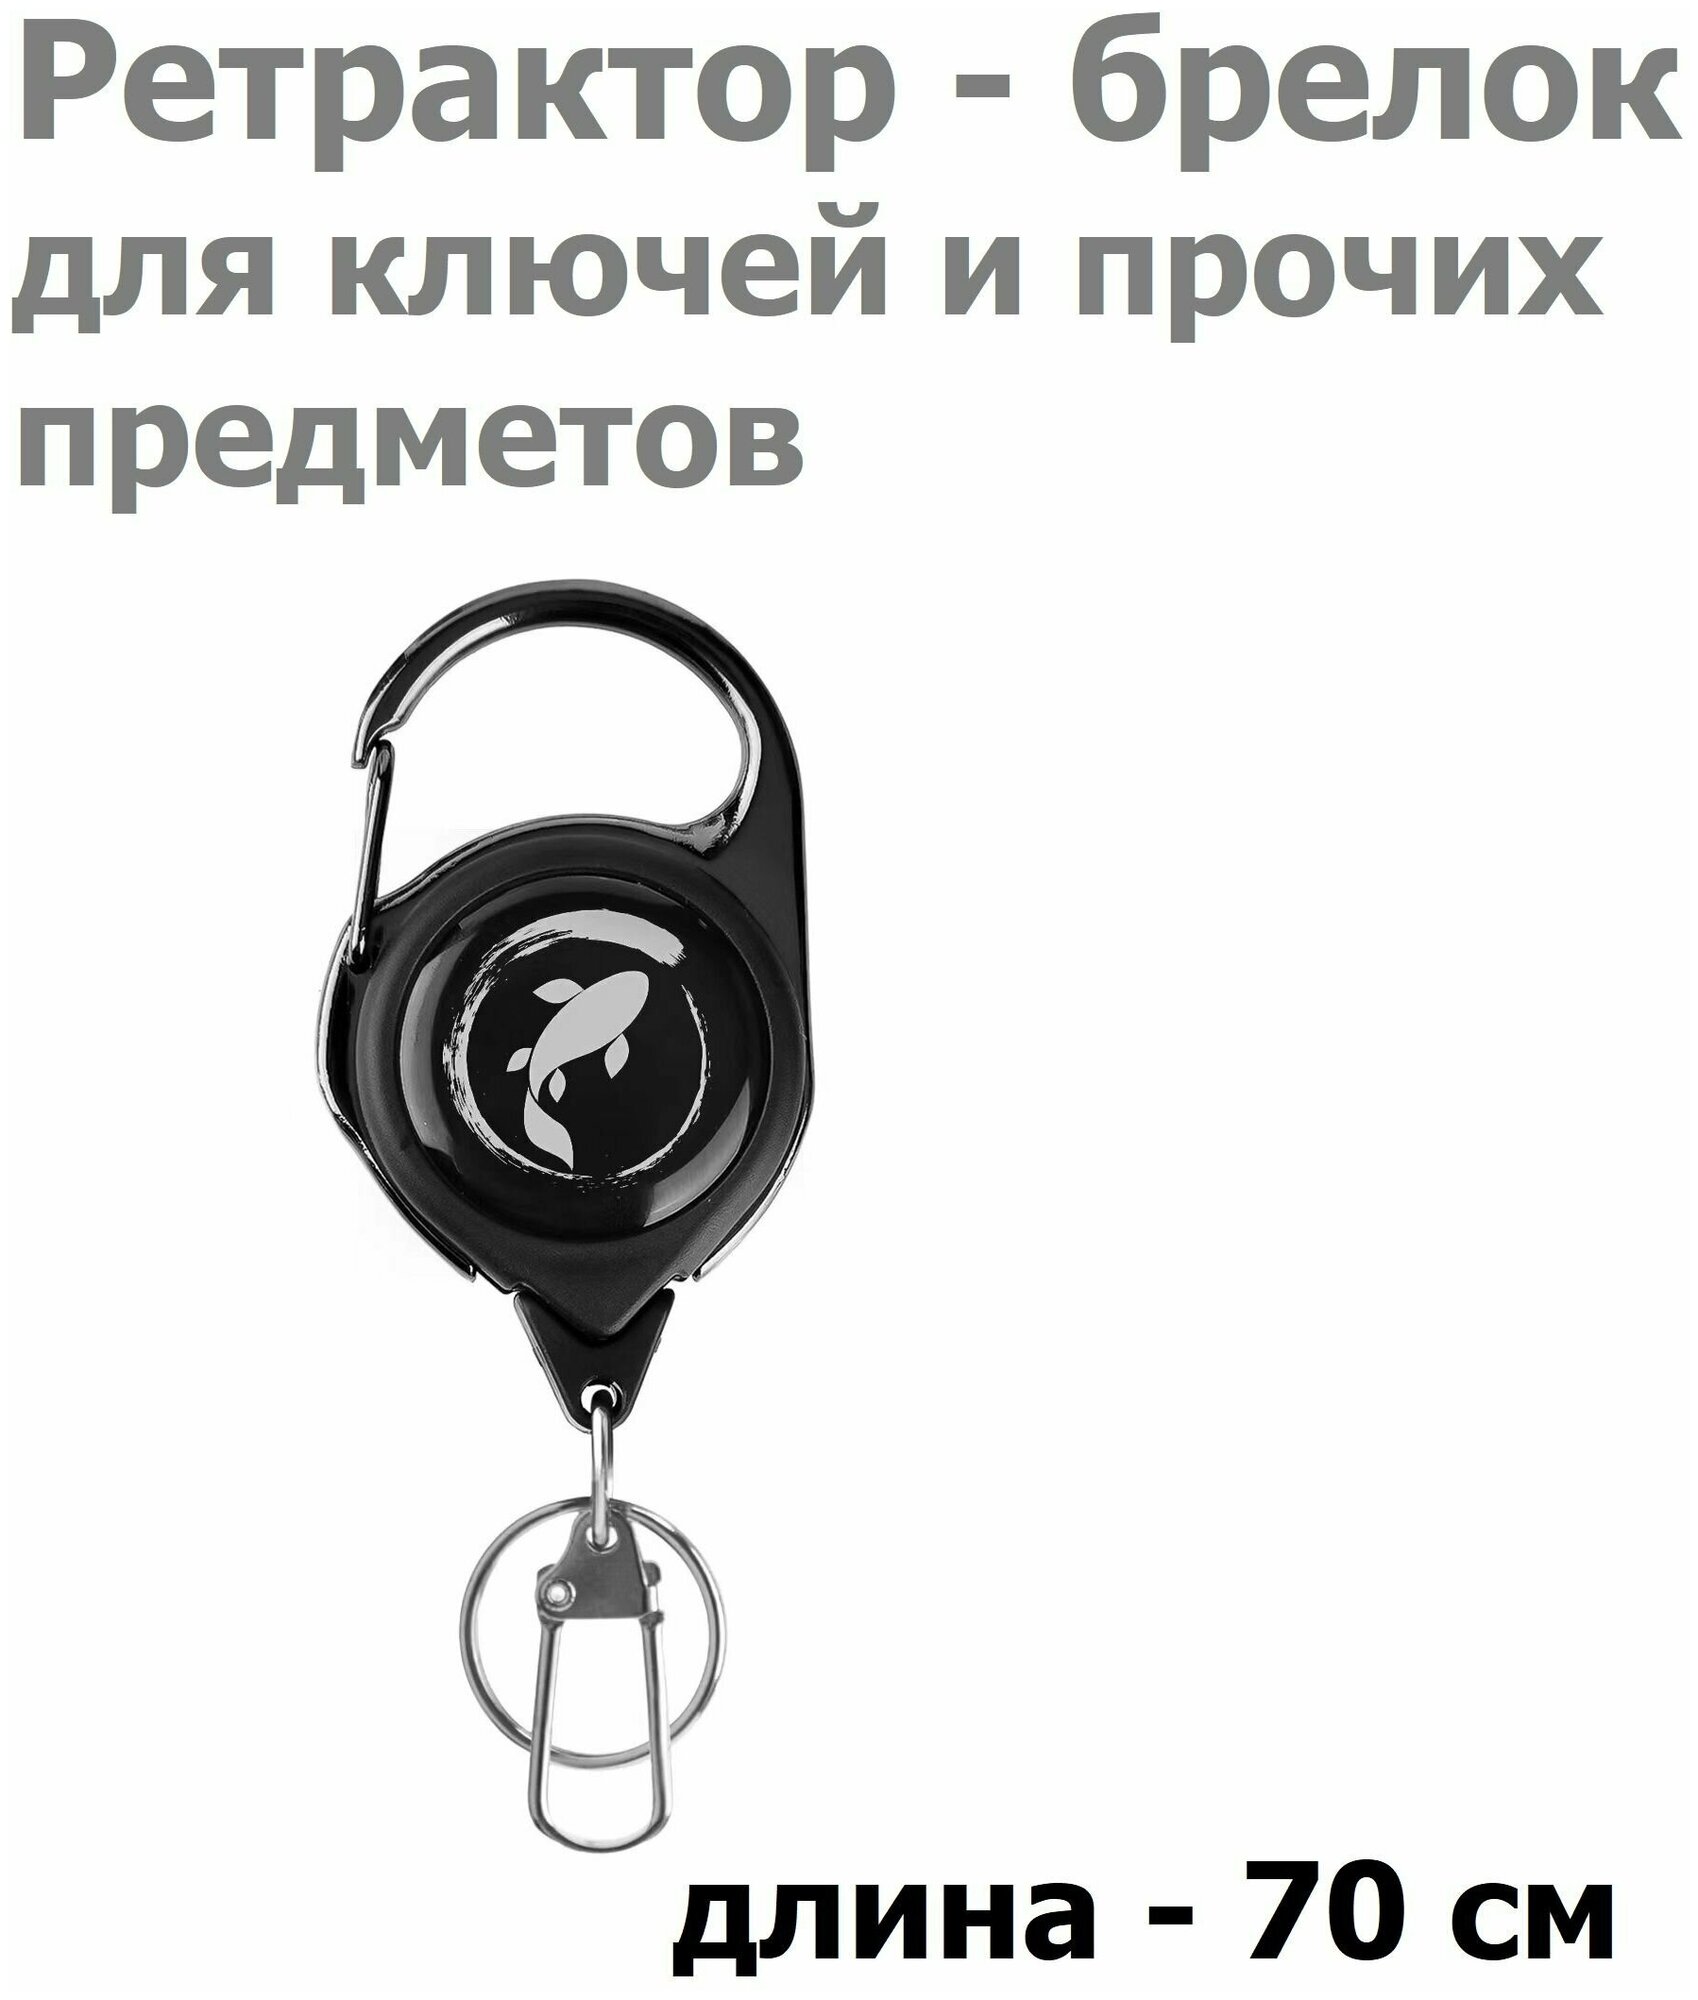 Ретрактор с карабином для ключей предметов 70см KOI-FISH SILVER / Ретривер рыболовный / Выдвижной Держатель для бейджа пропуска / Брелок для рыбалки